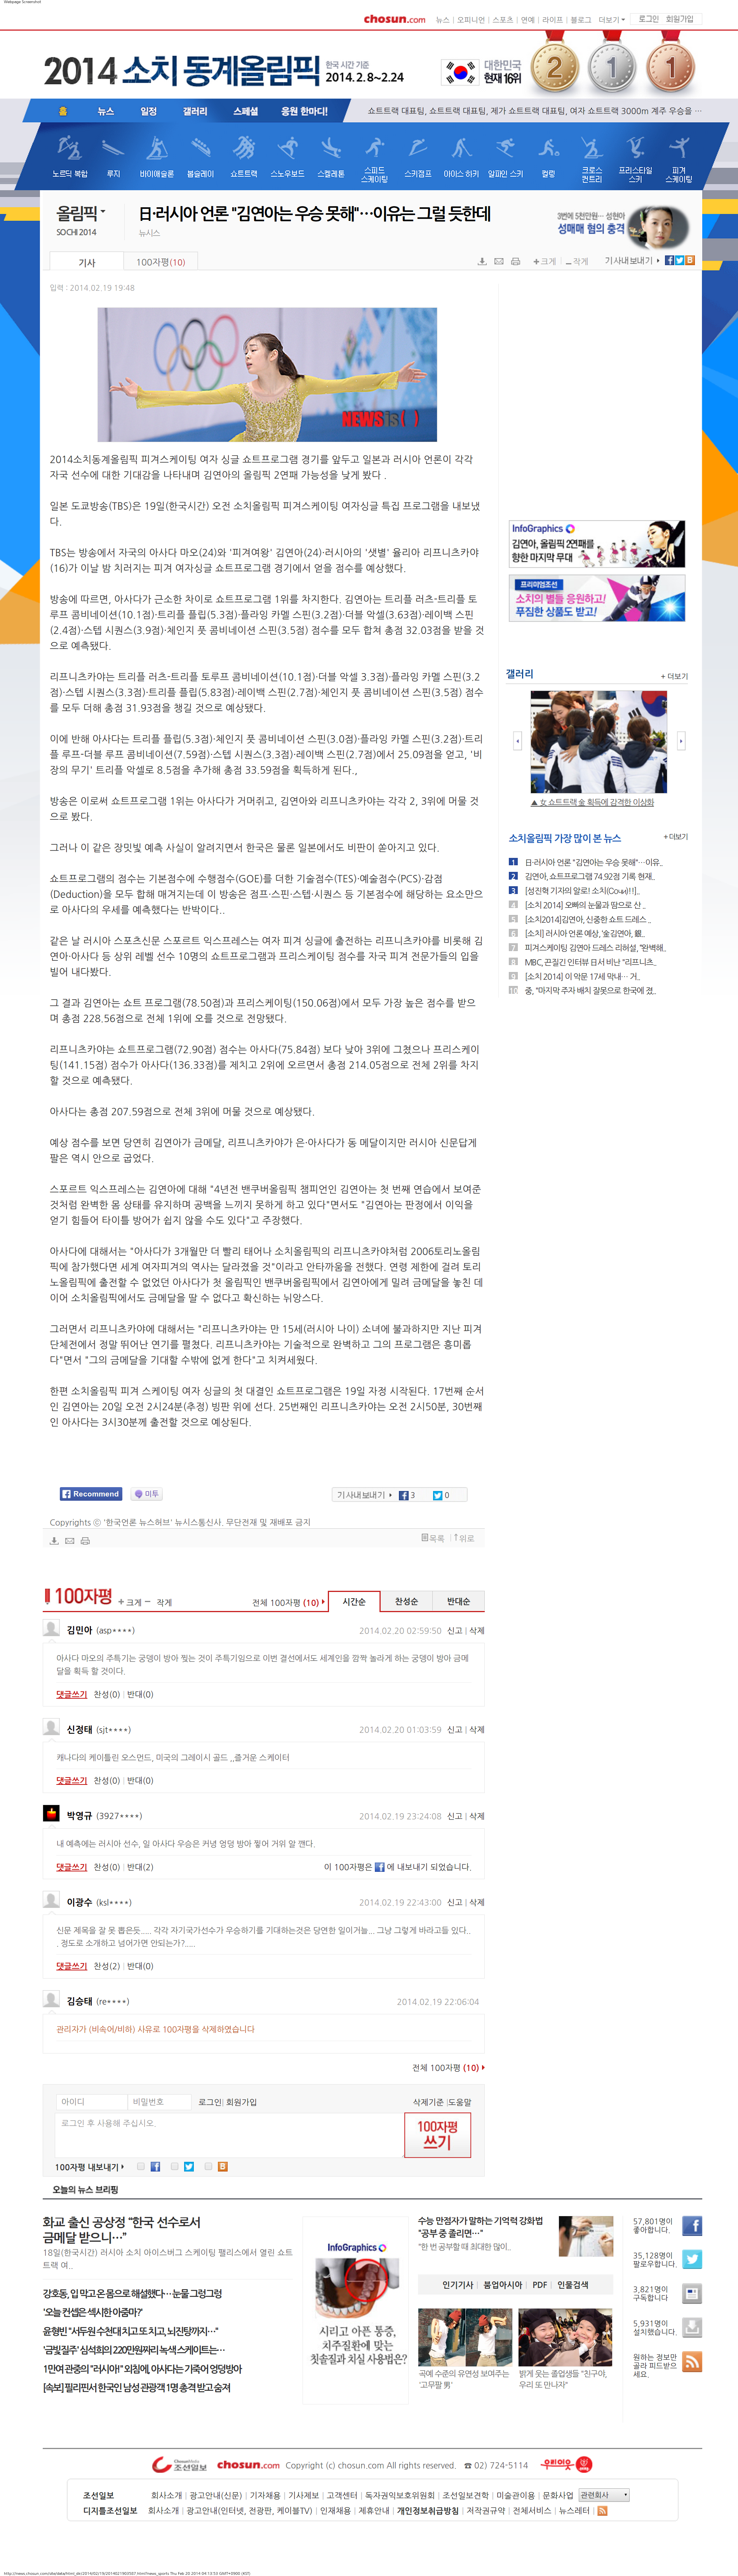 日·러시아 언론  김연아는 우승 못해 …이유는 그럴 듯한데 - 1등 인터넷뉴스 조선닷컴.png